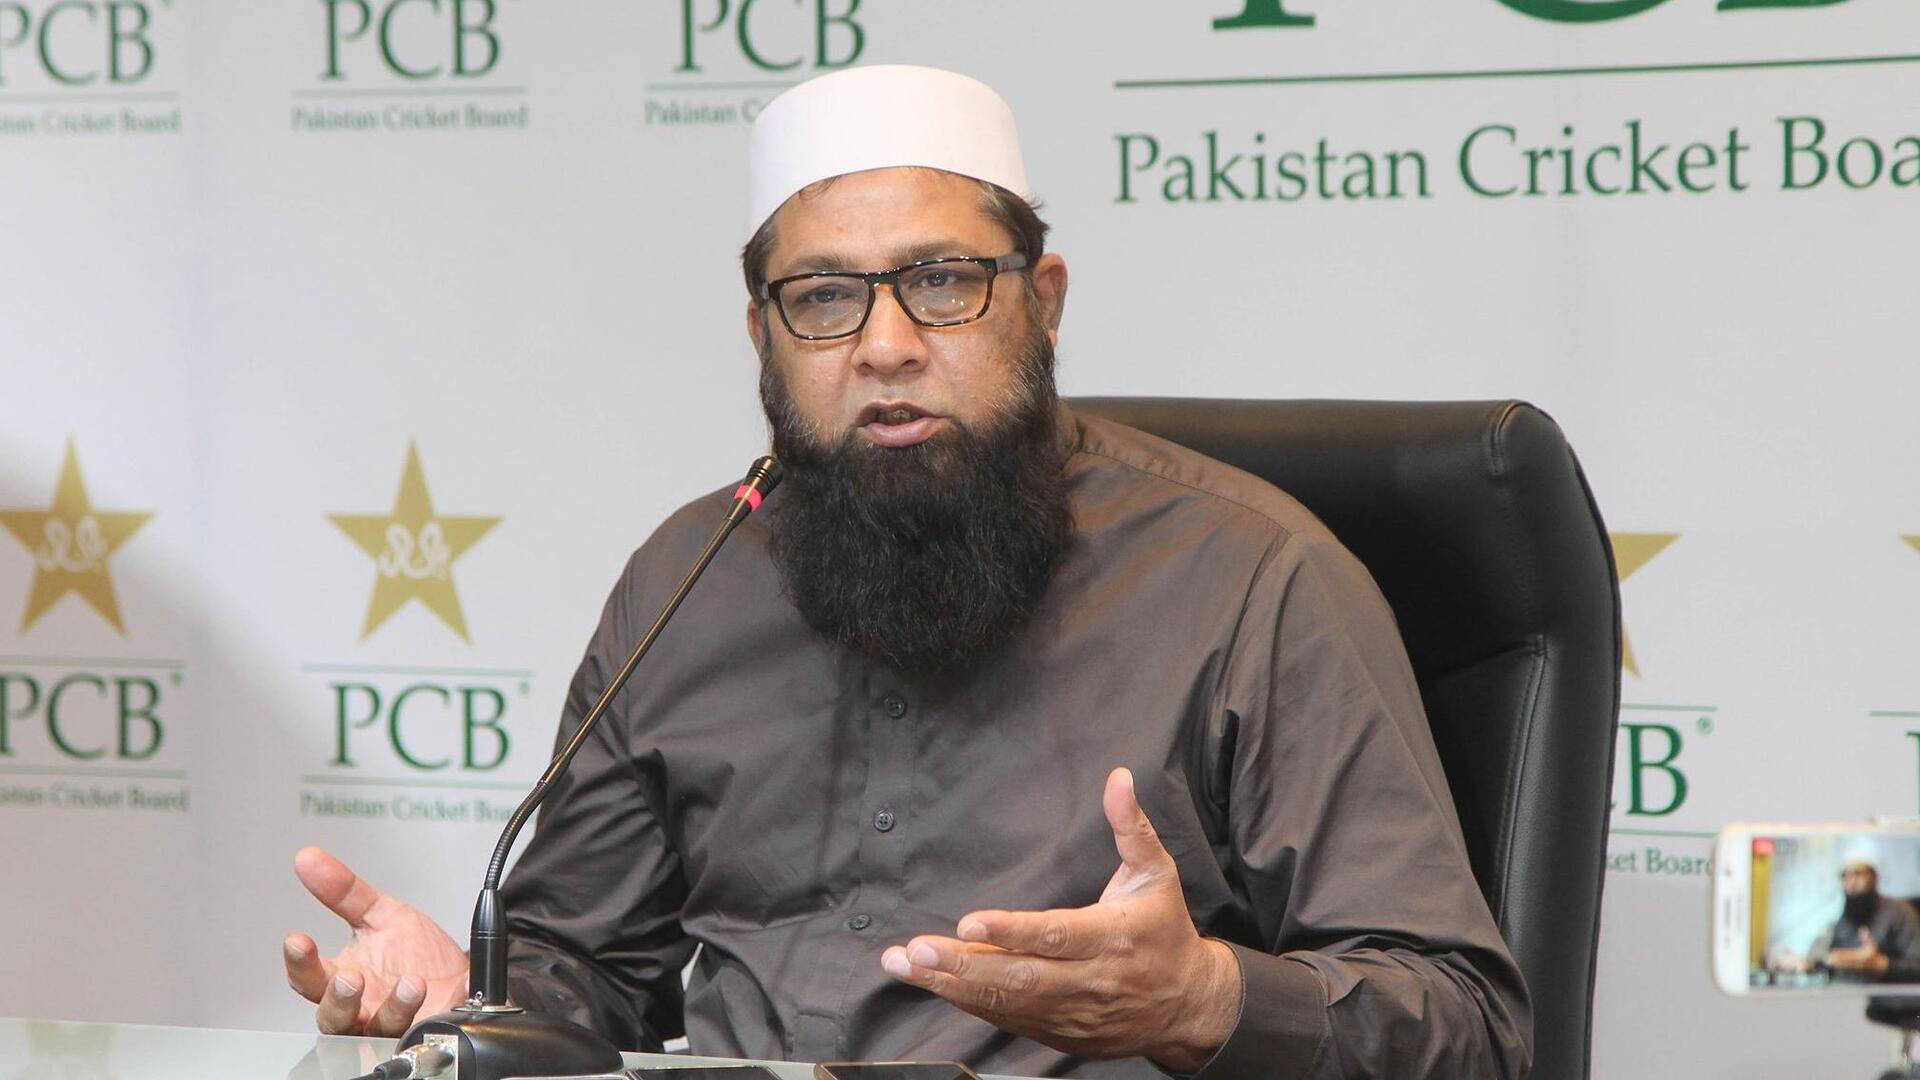 PCB ने इंजमाम-उल-हक को चुना पाकिस्तान क्रिकेट टीम का नया मुख्य चयनकर्ता